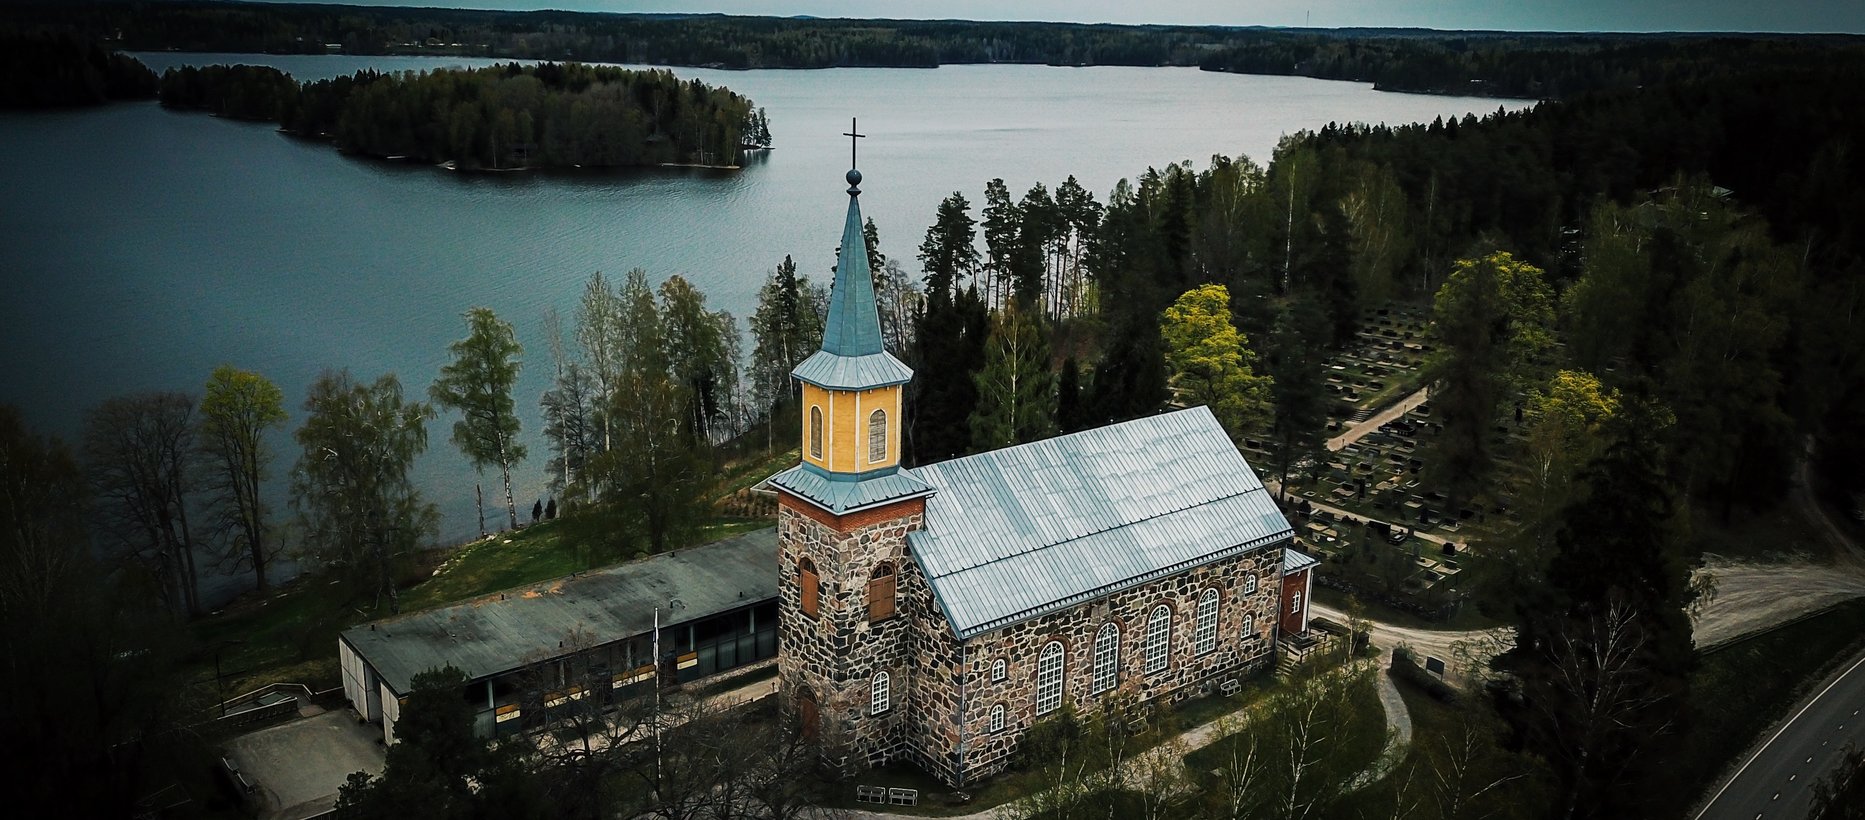 Karjalohjan kirkko ilmasta käsin keväällä. Kuva: Jaakko Saario